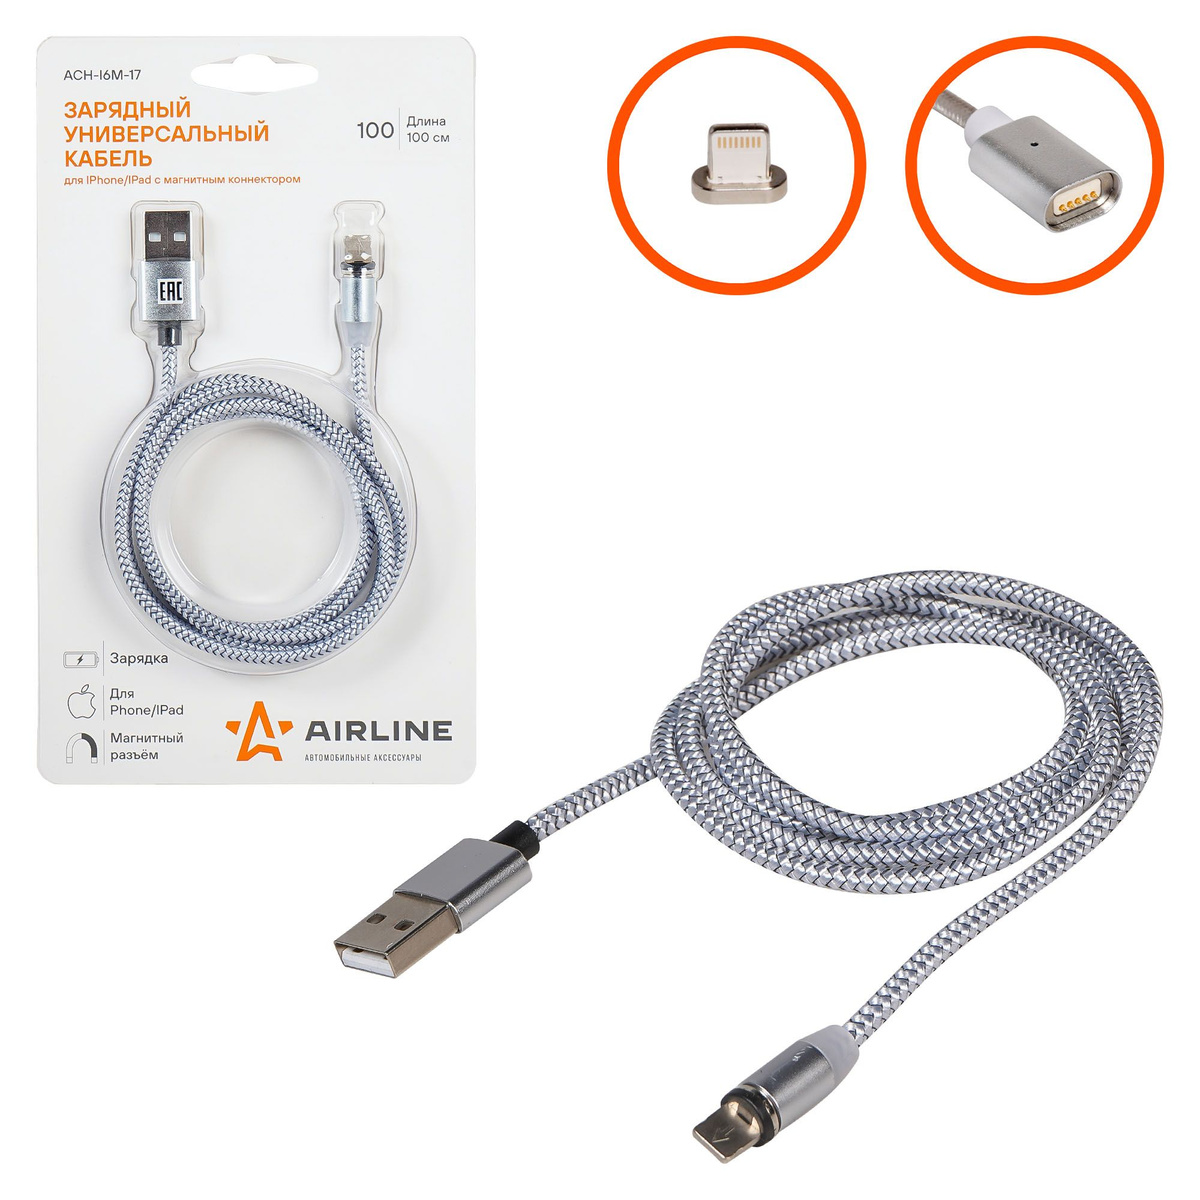 Зарядный кабель для Iphone/IPad с магнитным коннектором ACH-I6M-17